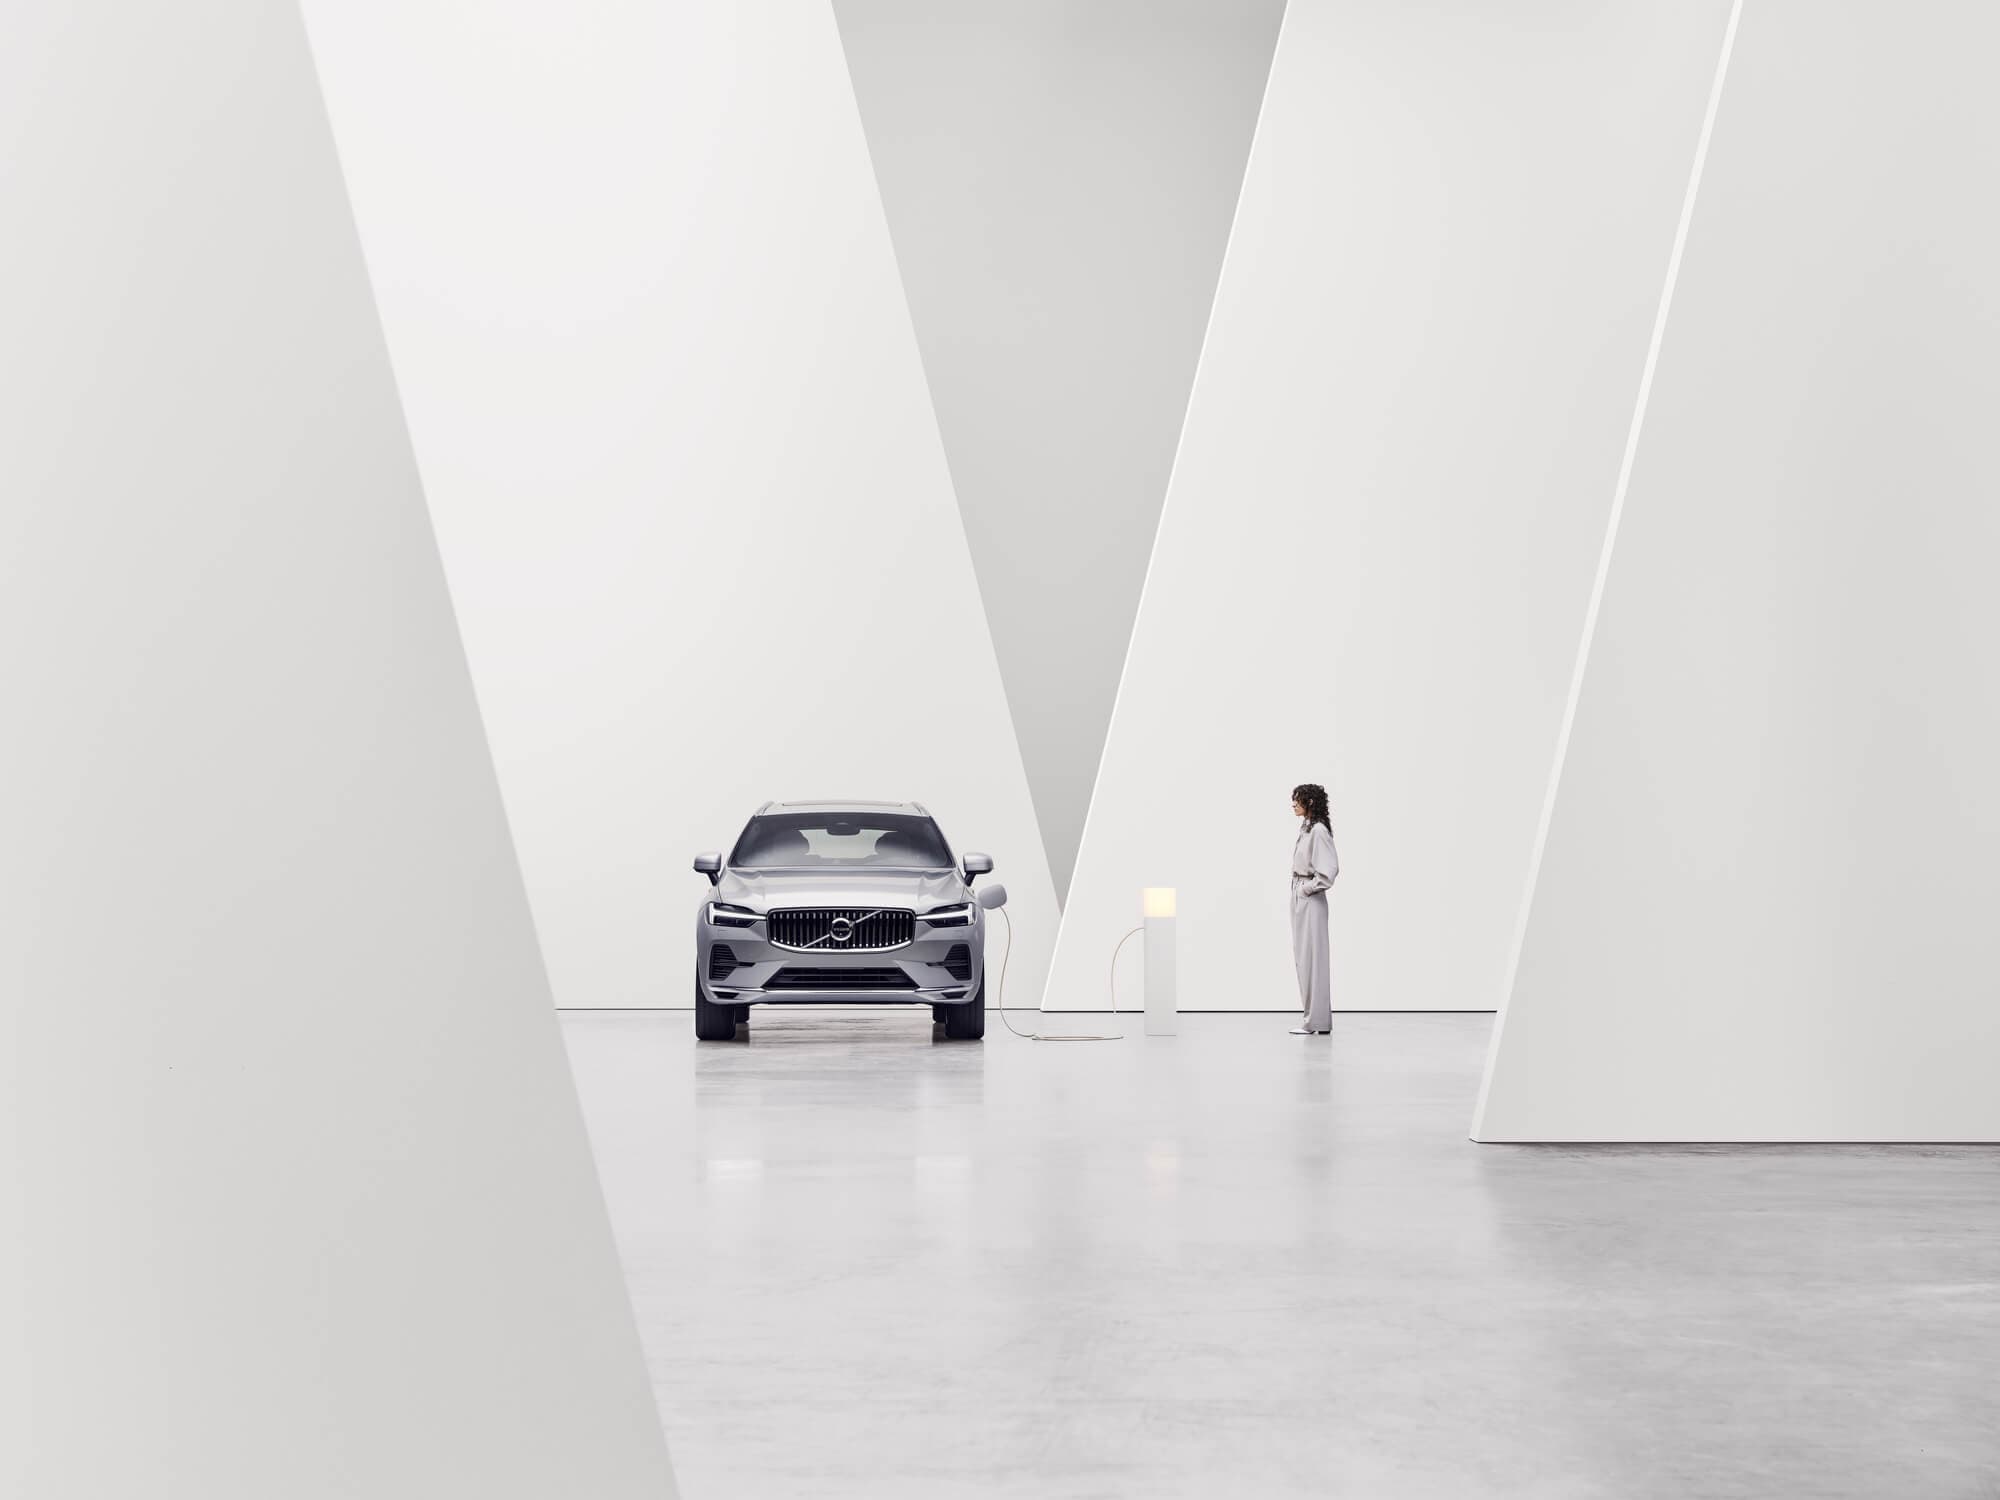 Vooraanzicht van een Volvo met een wit interieur naast een laadpaal